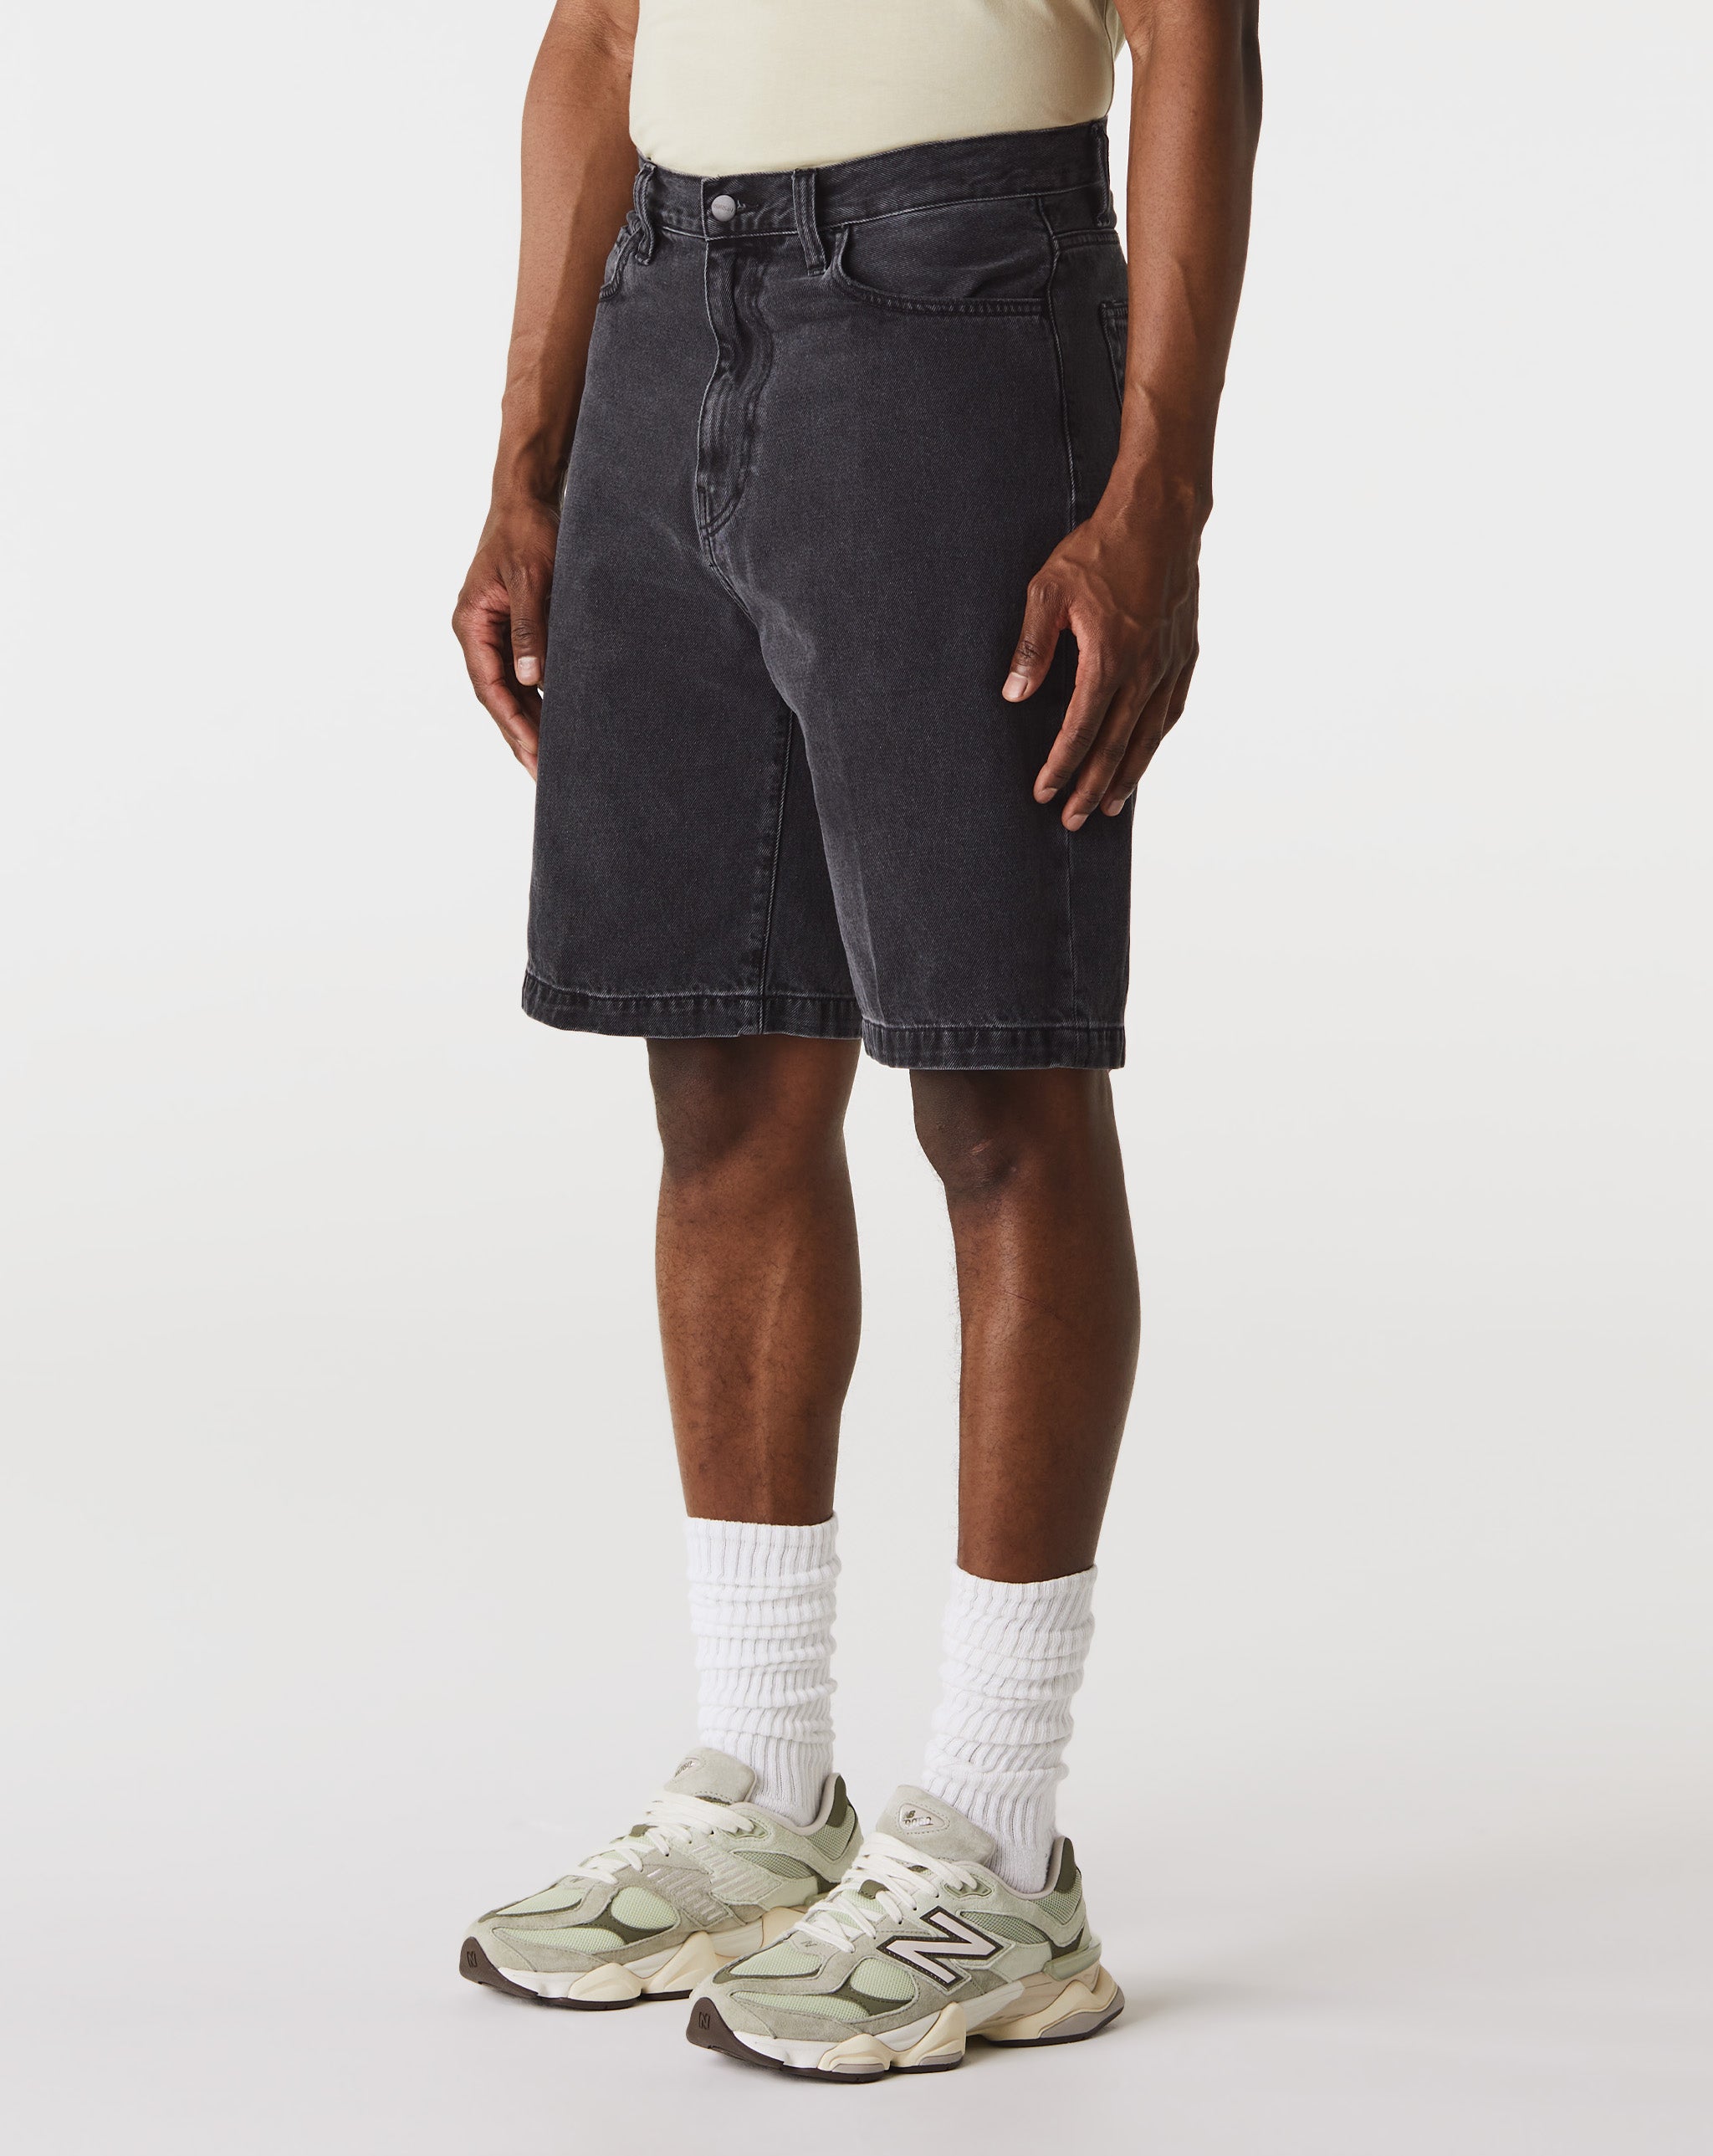 Carhartt WIP Landon Shorts  - Cheap Urlfreeze Jordan outlet